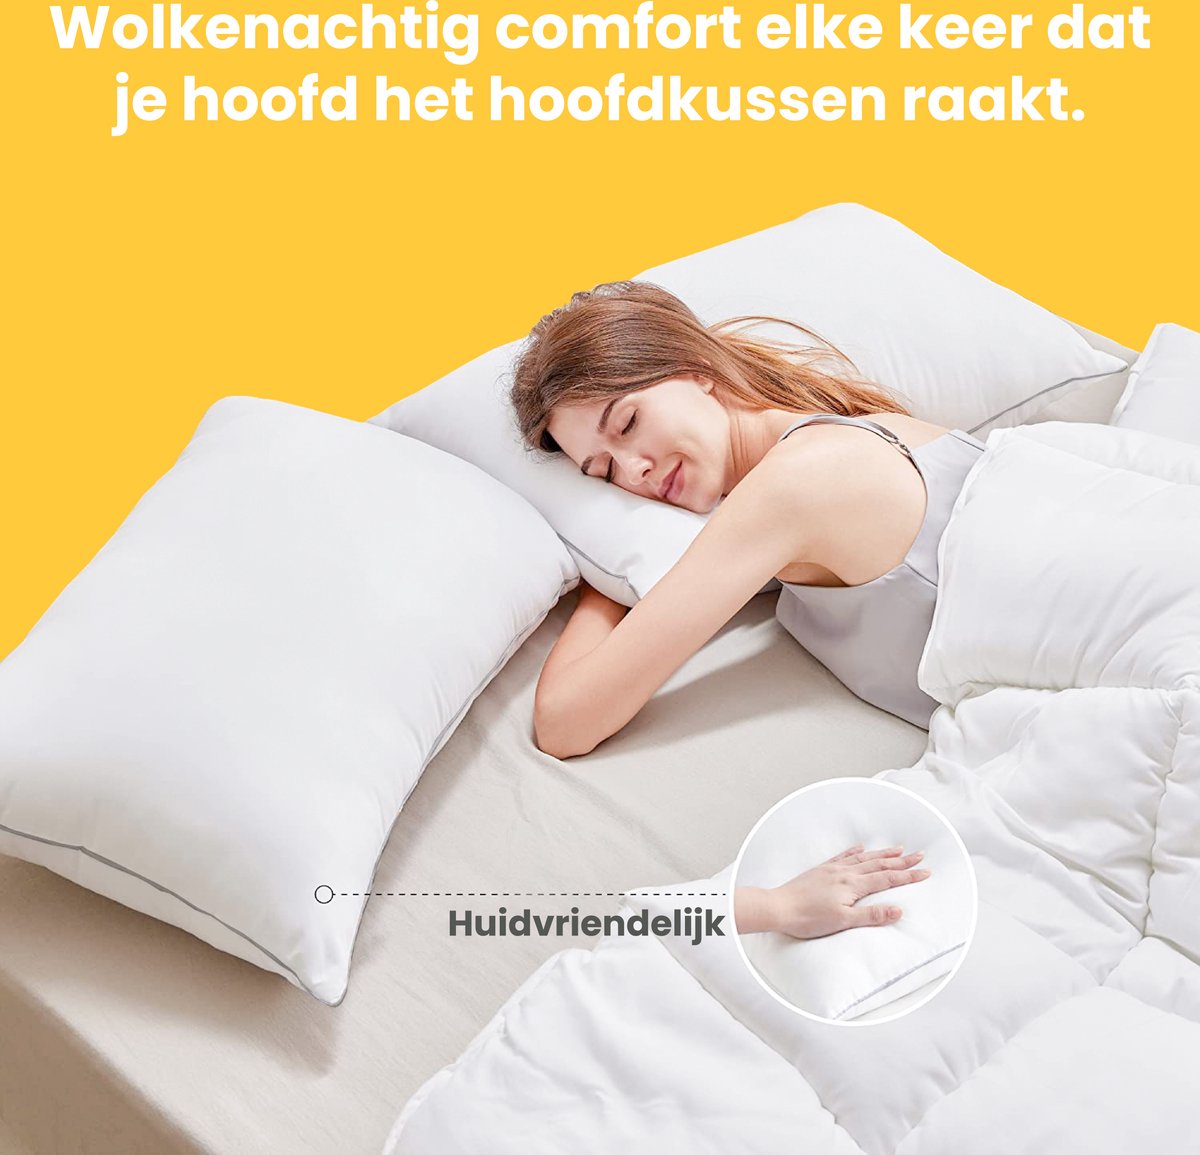 Sleep Comfy - Hoofdkussen - 30 dagen - 2 stuks Hotelkwaliteit Hoofdkussens... | bol.com